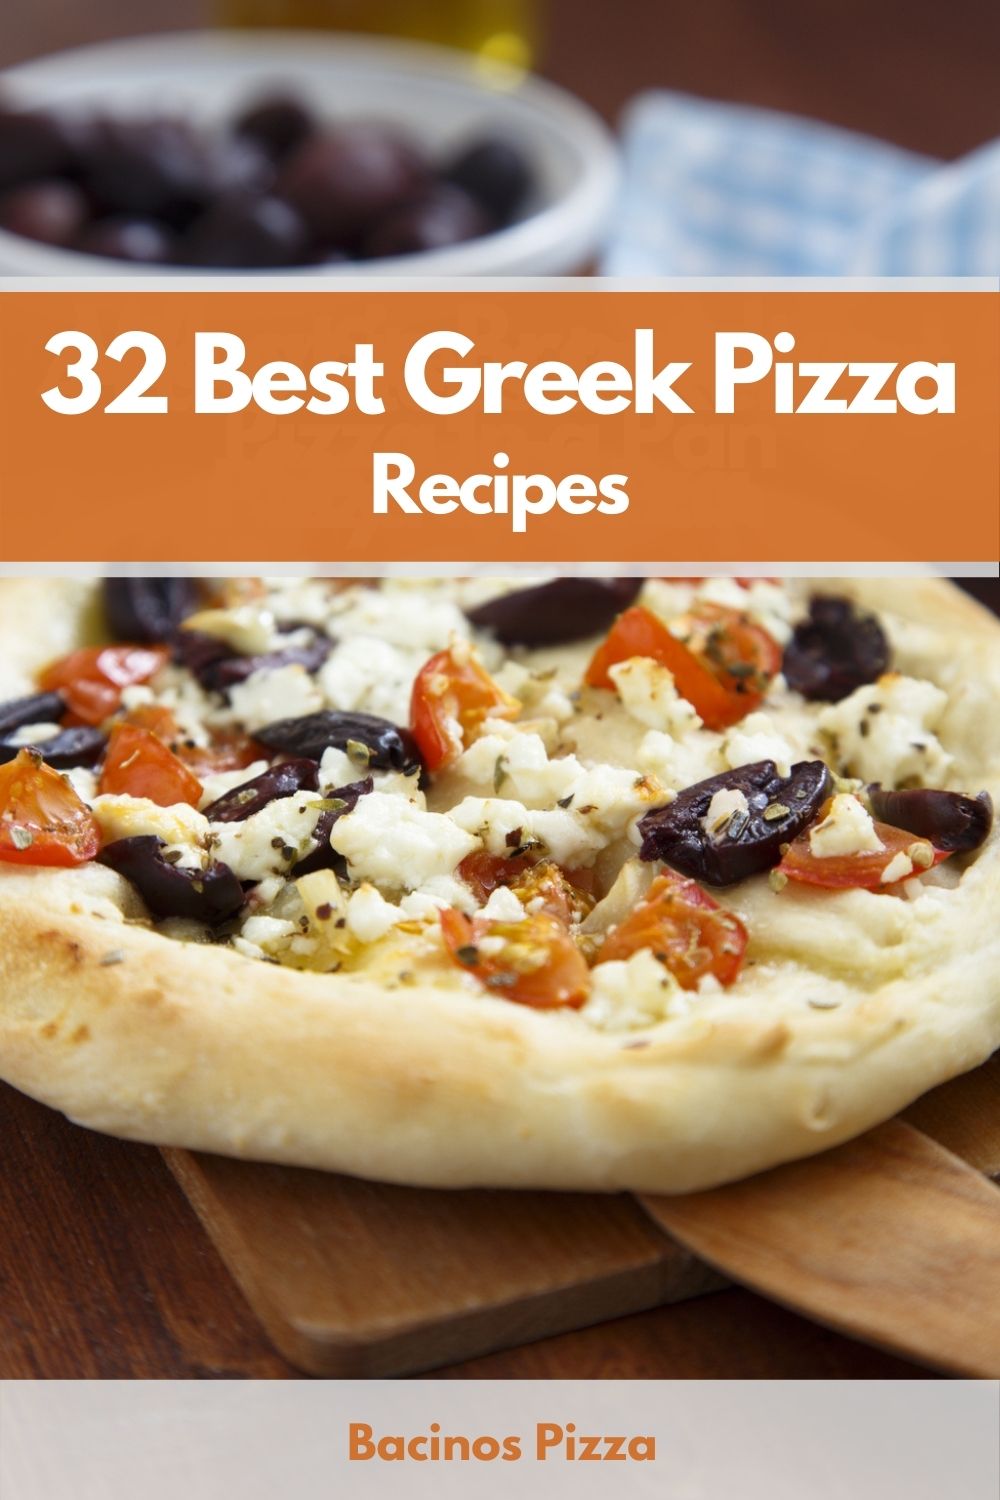 32 Best Greek Pizza Recipes pin